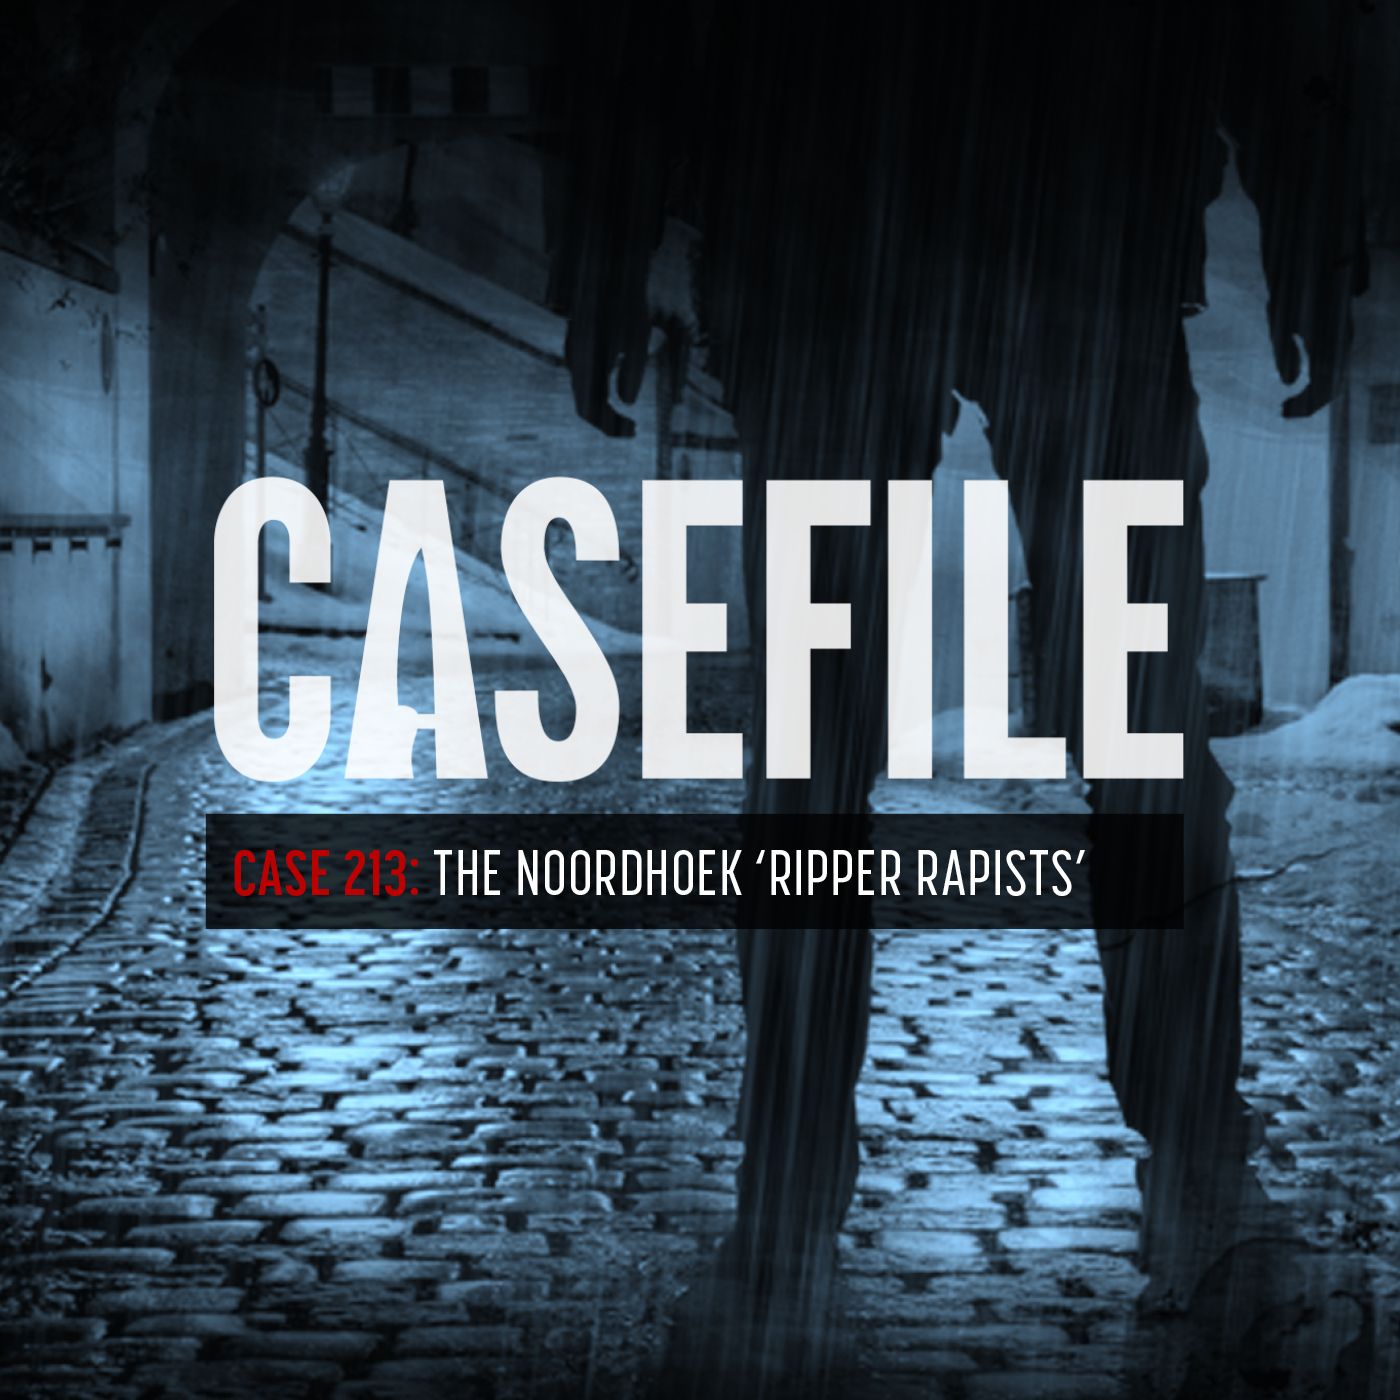 Case 213: The Noordhoek 'Ripper Rapists'